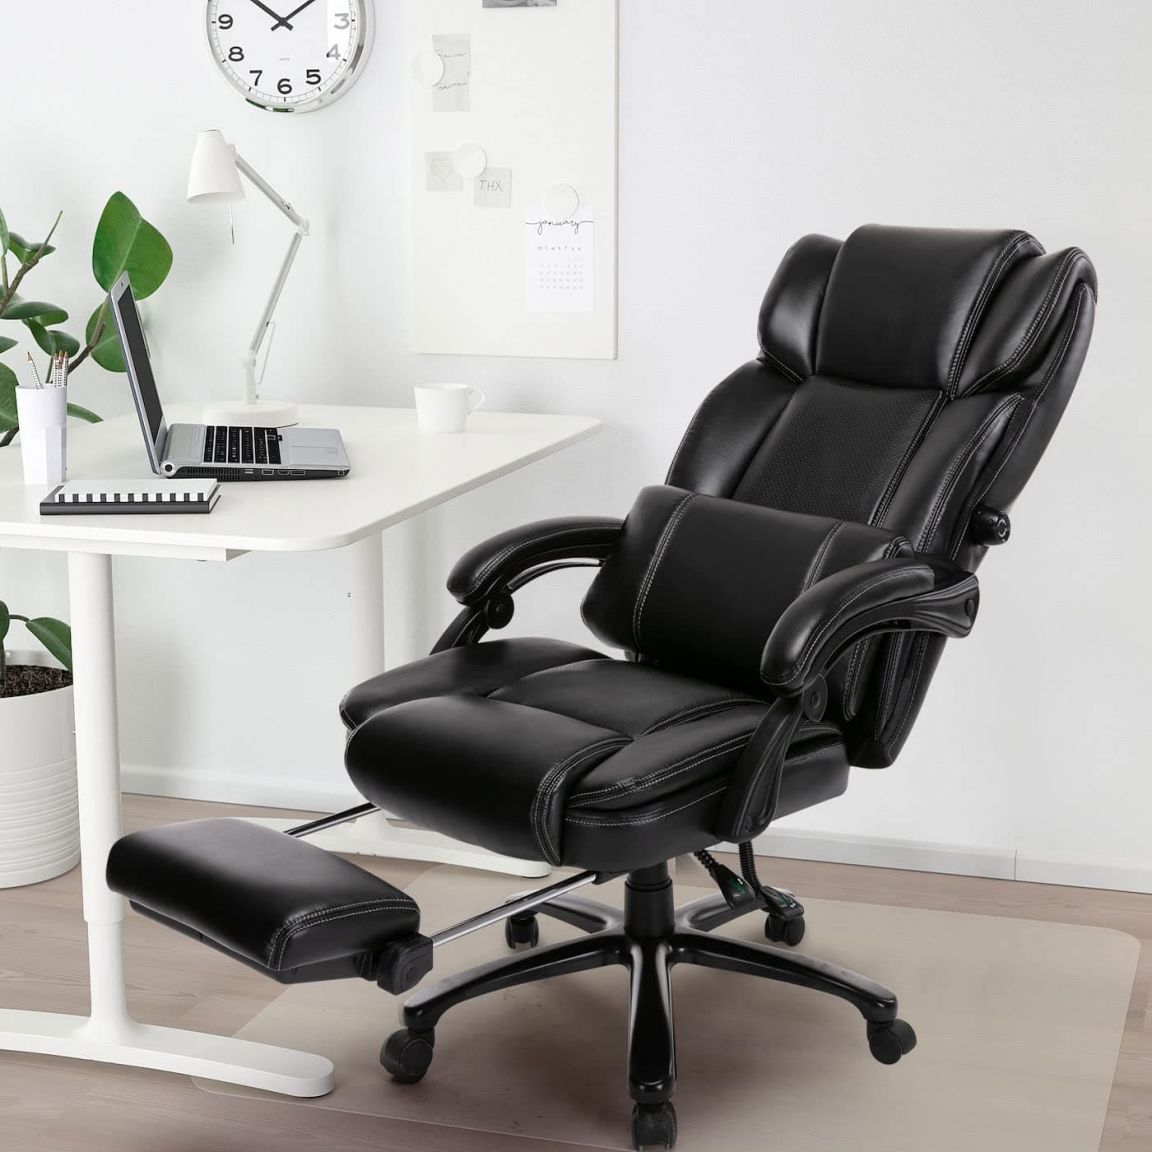 Ghế văn phòng nhập khẩu cho giám đốc có kích thước lớn hơn các mẫu ghế văn phòng thông thương